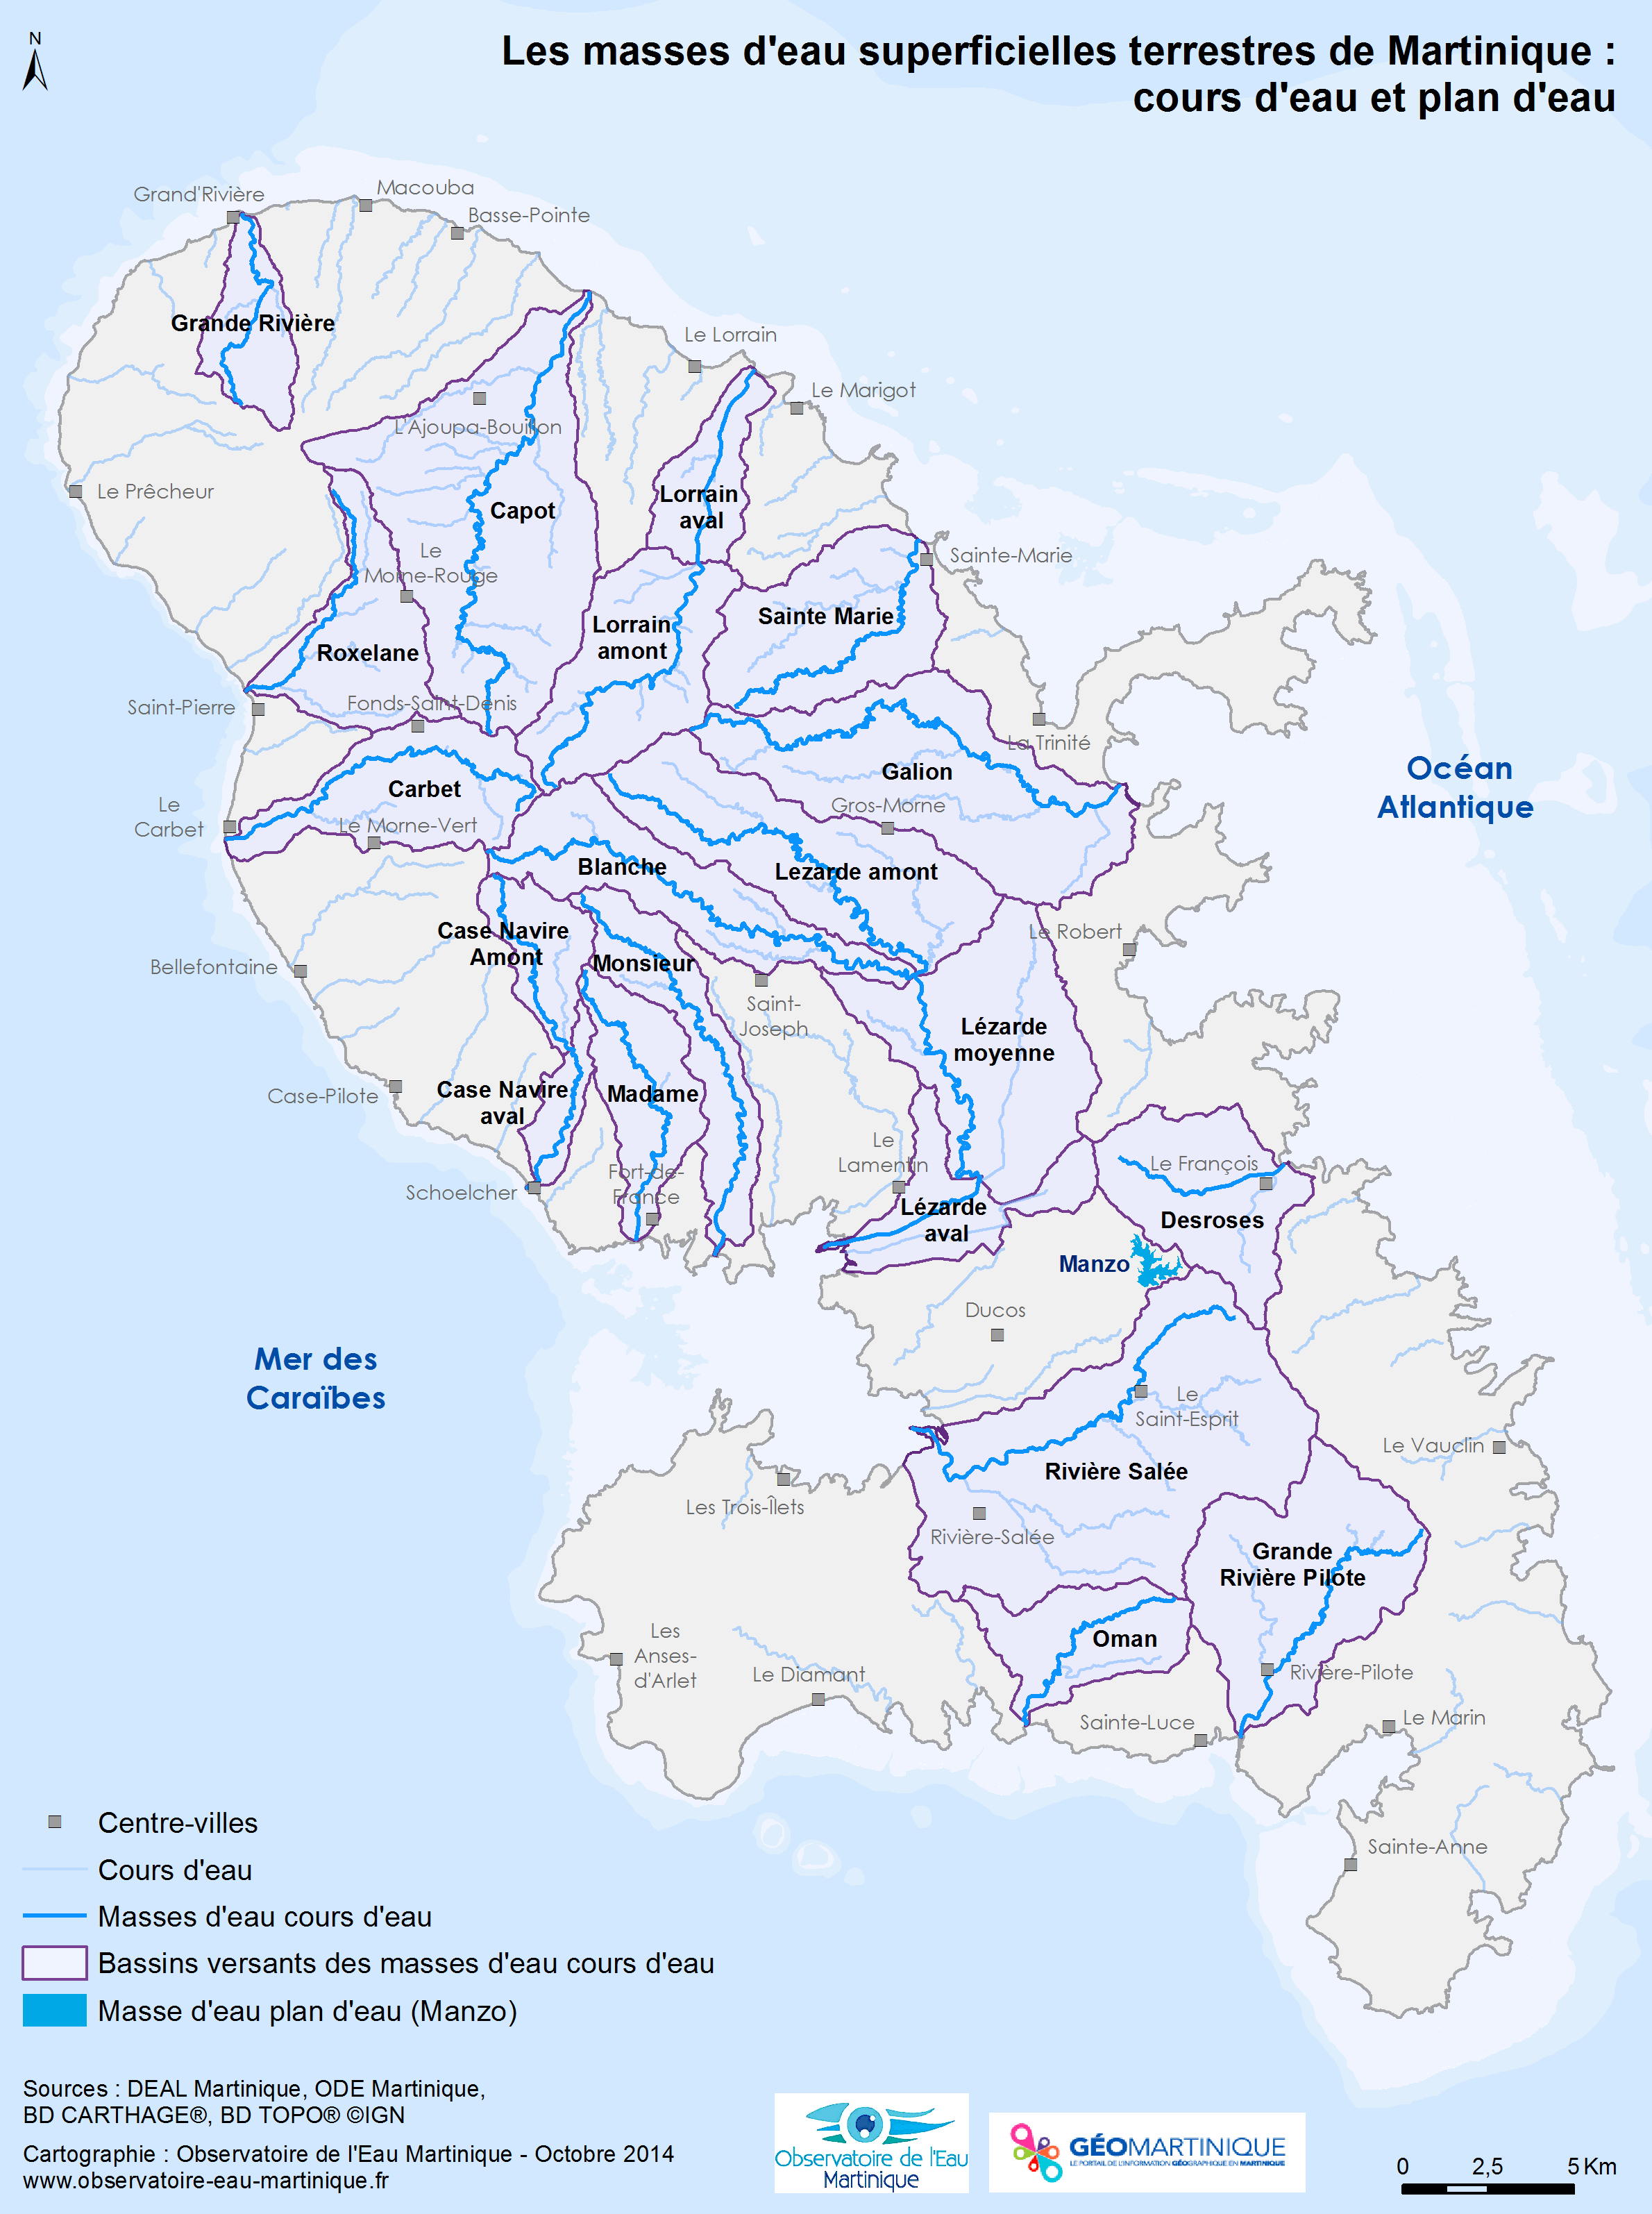 Masses d'eau superficielles terrestres de Martinique : cours d'eau et plan d'eau